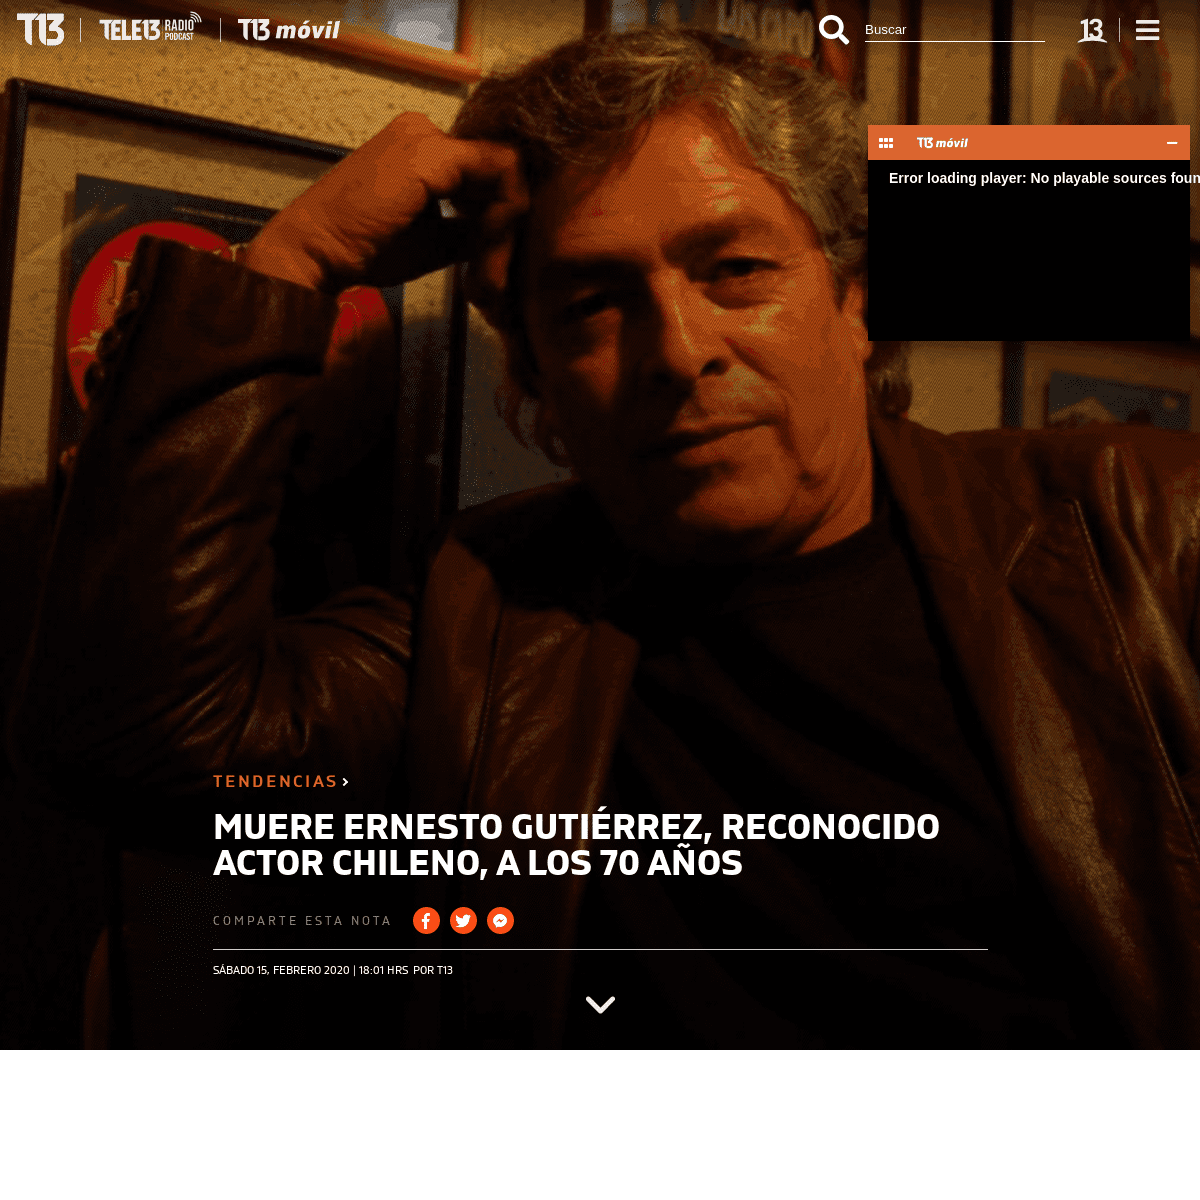 A complete backup of www.t13.cl/noticia/tendencias/muere-ernesto-gutierrez-reconocido-actor-chileno-70-anos